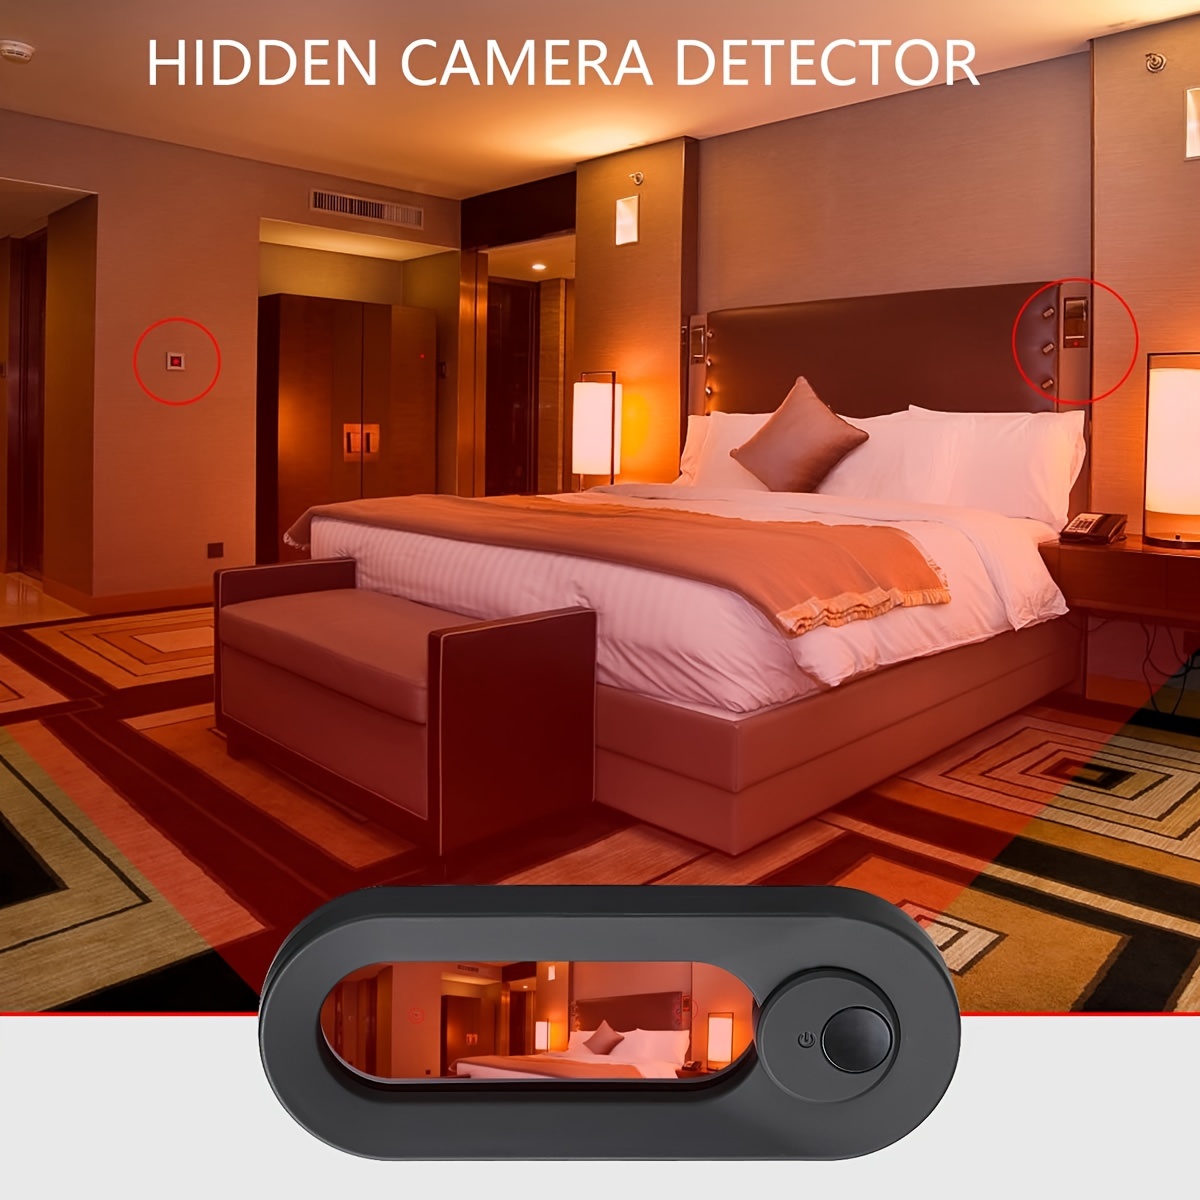 Détecteurs de caméra cachée 1pc, détecteur de périphérique caché LED avec  viseurs infrarouges, détecteur de caméra anti-espion, localise la caméra  cachée, alarme antivol rechargeable pour AirBnB, hôtels, salle de bain,  salle de